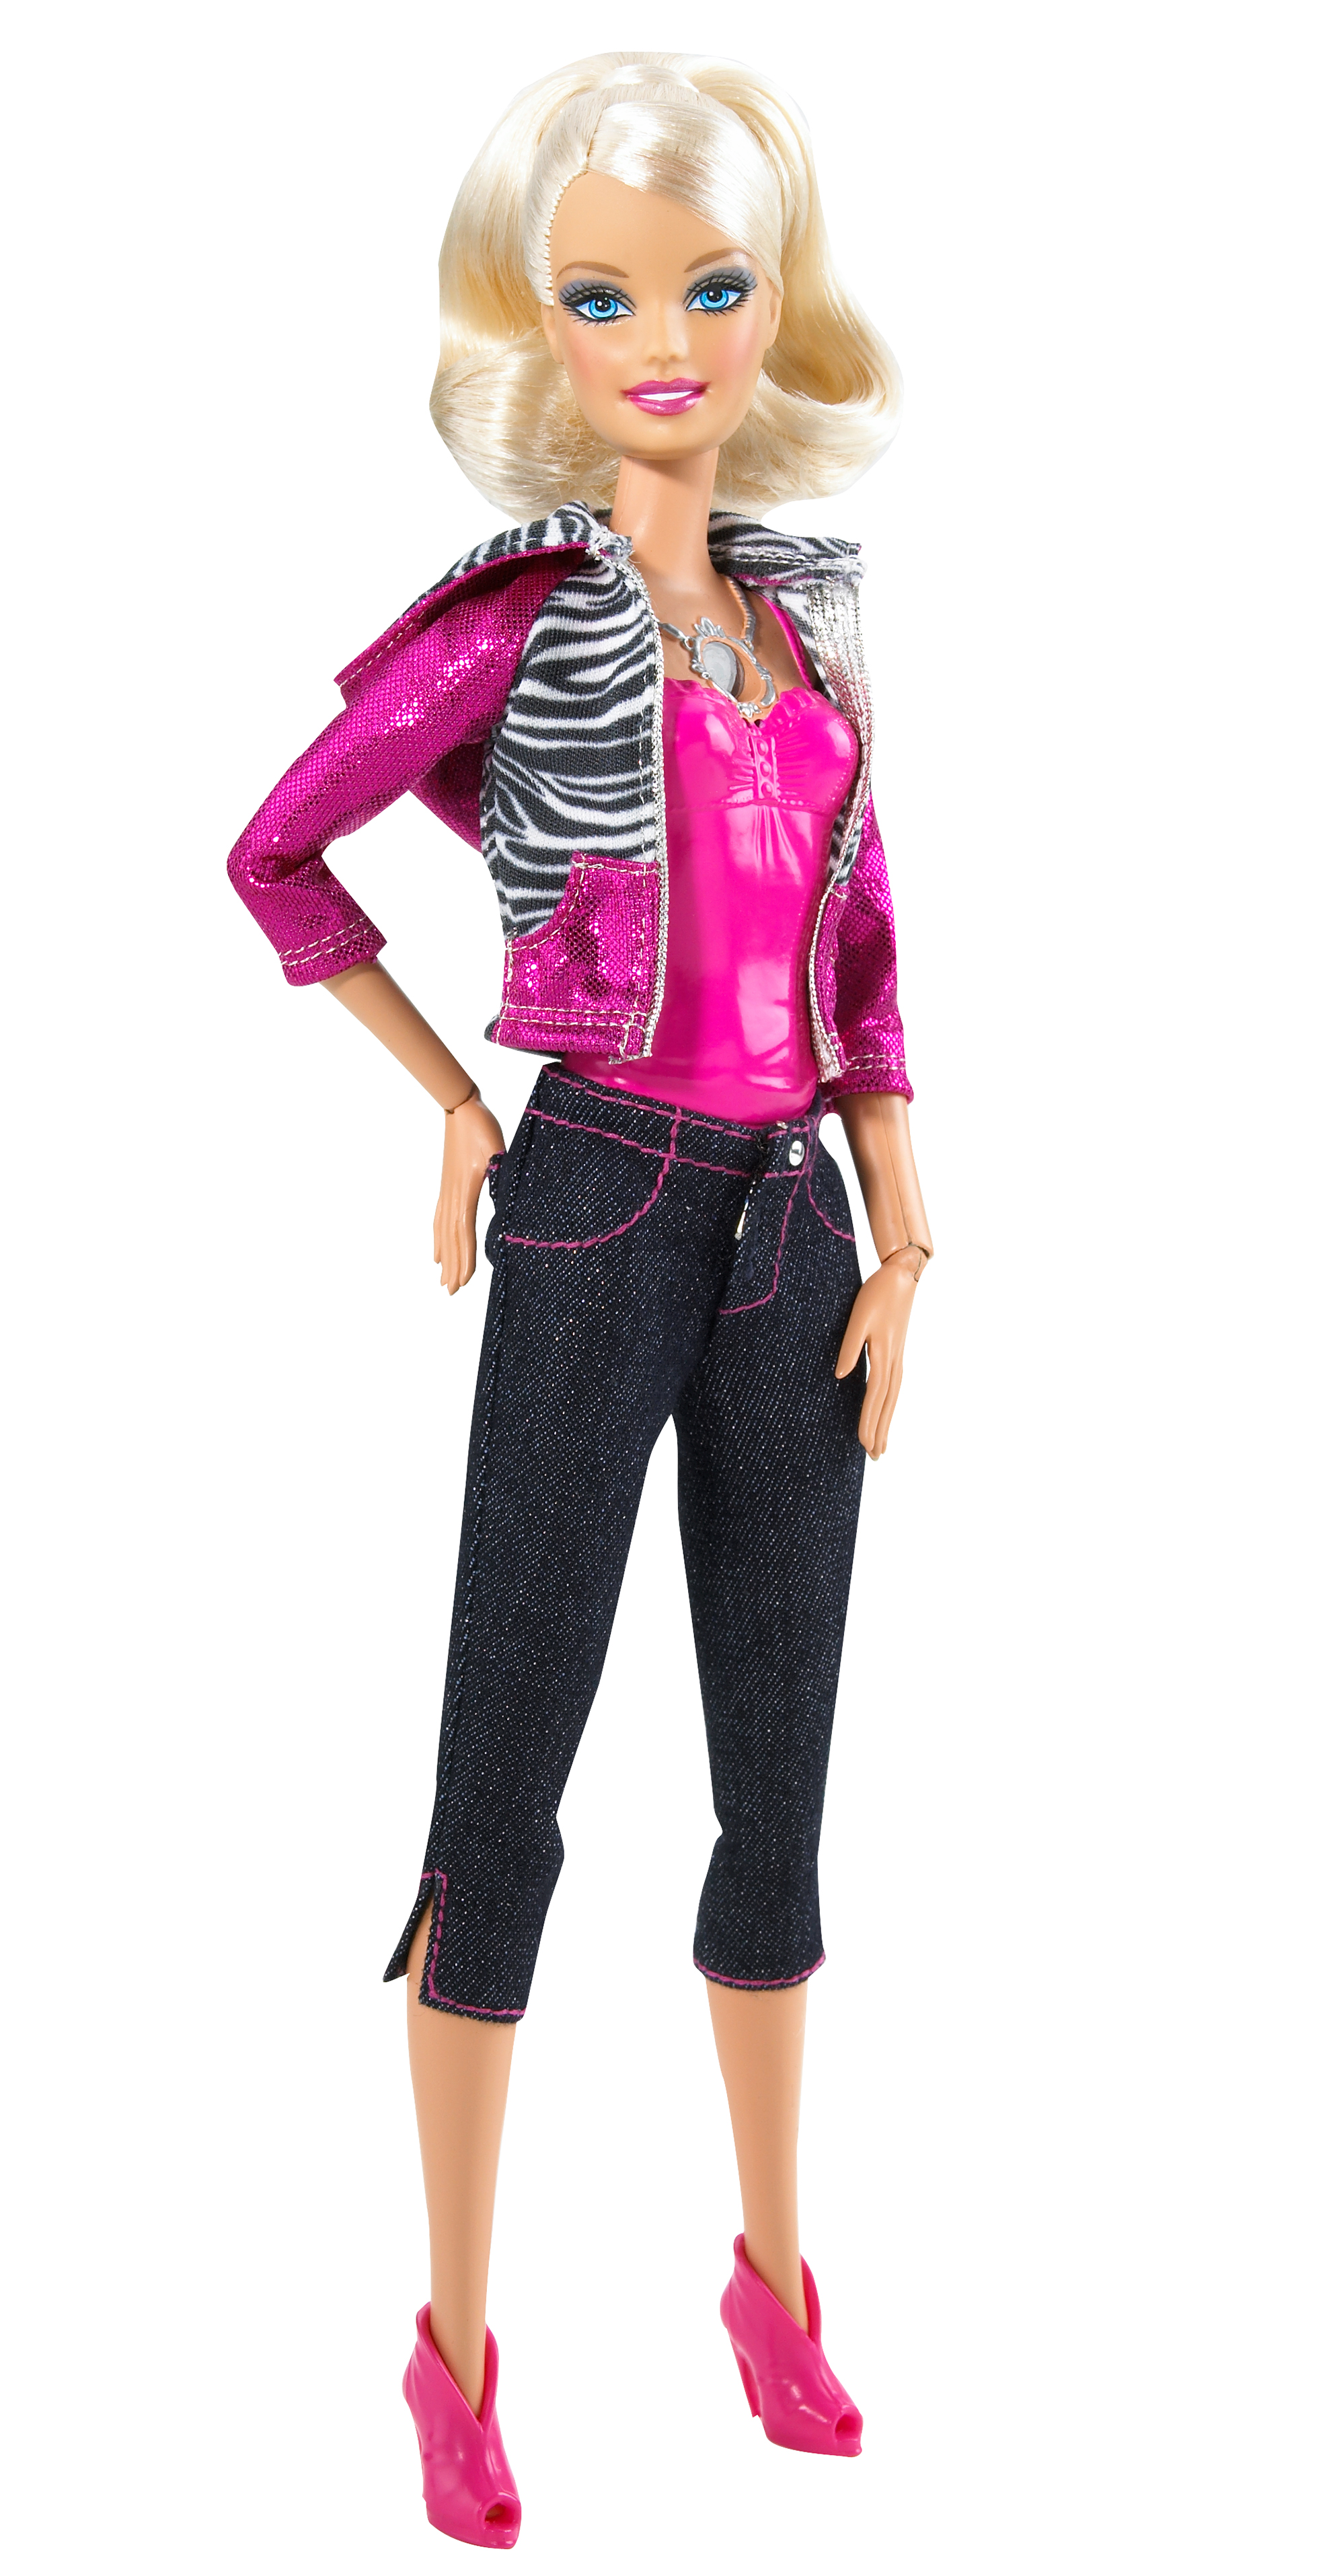 Los nuevos Barbie y Ken que ha lanzado Mattel con los looks de la